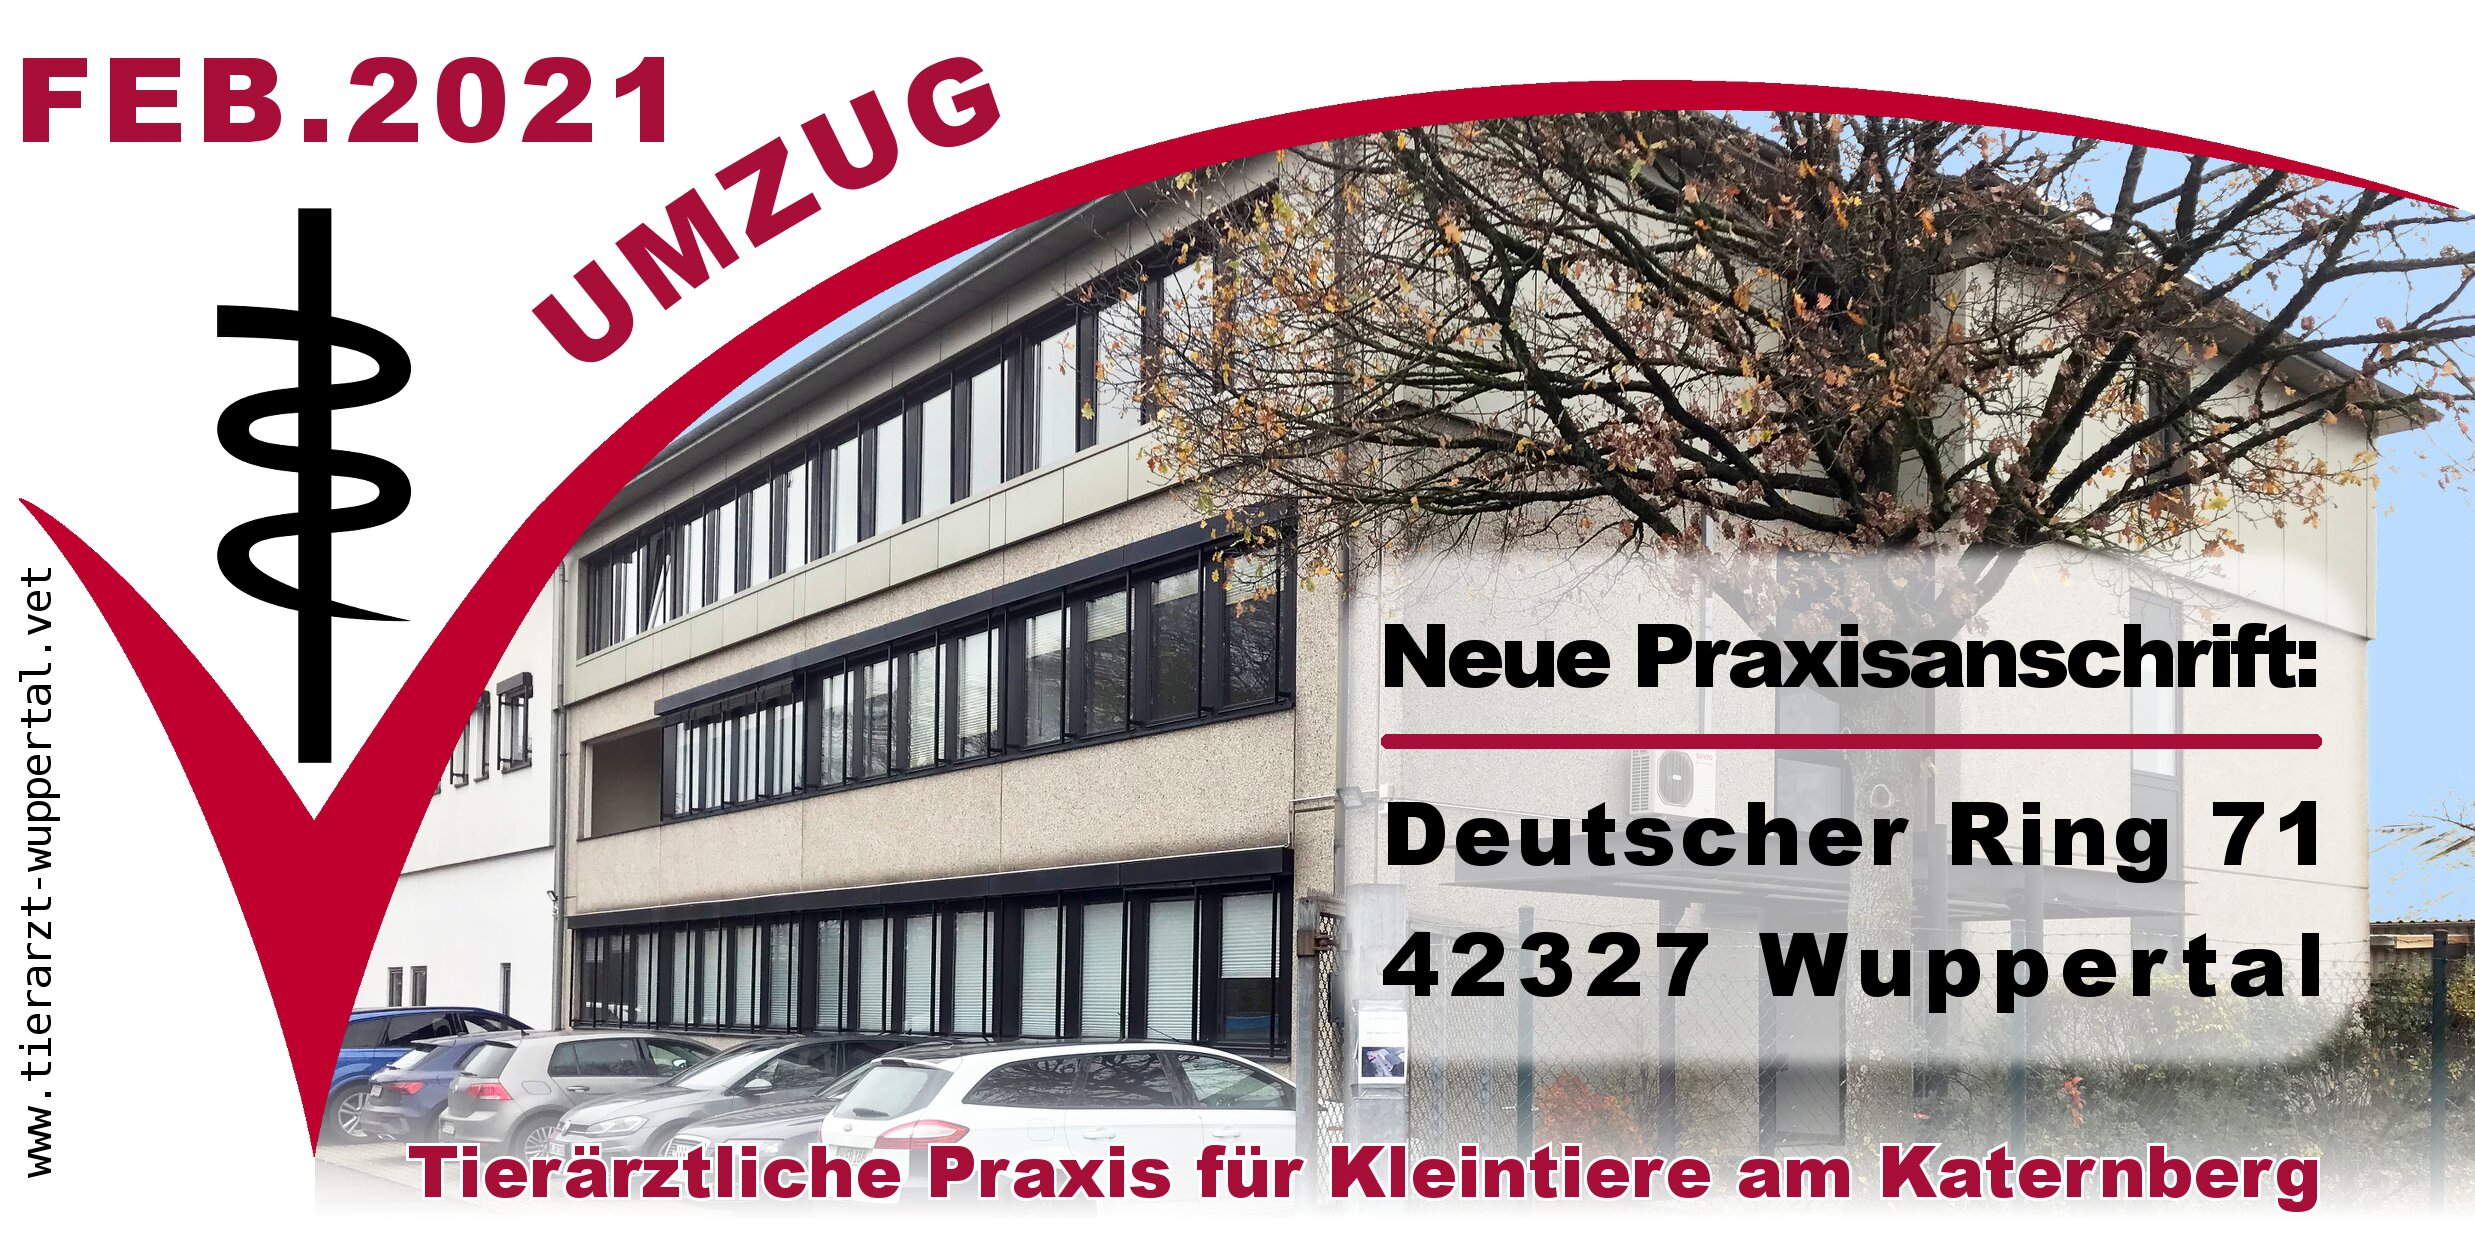 Umzug der Tierarztpraxis im Februar 2021 zu Adresse: Deutscher Ring 71, 42327 Wuppertal